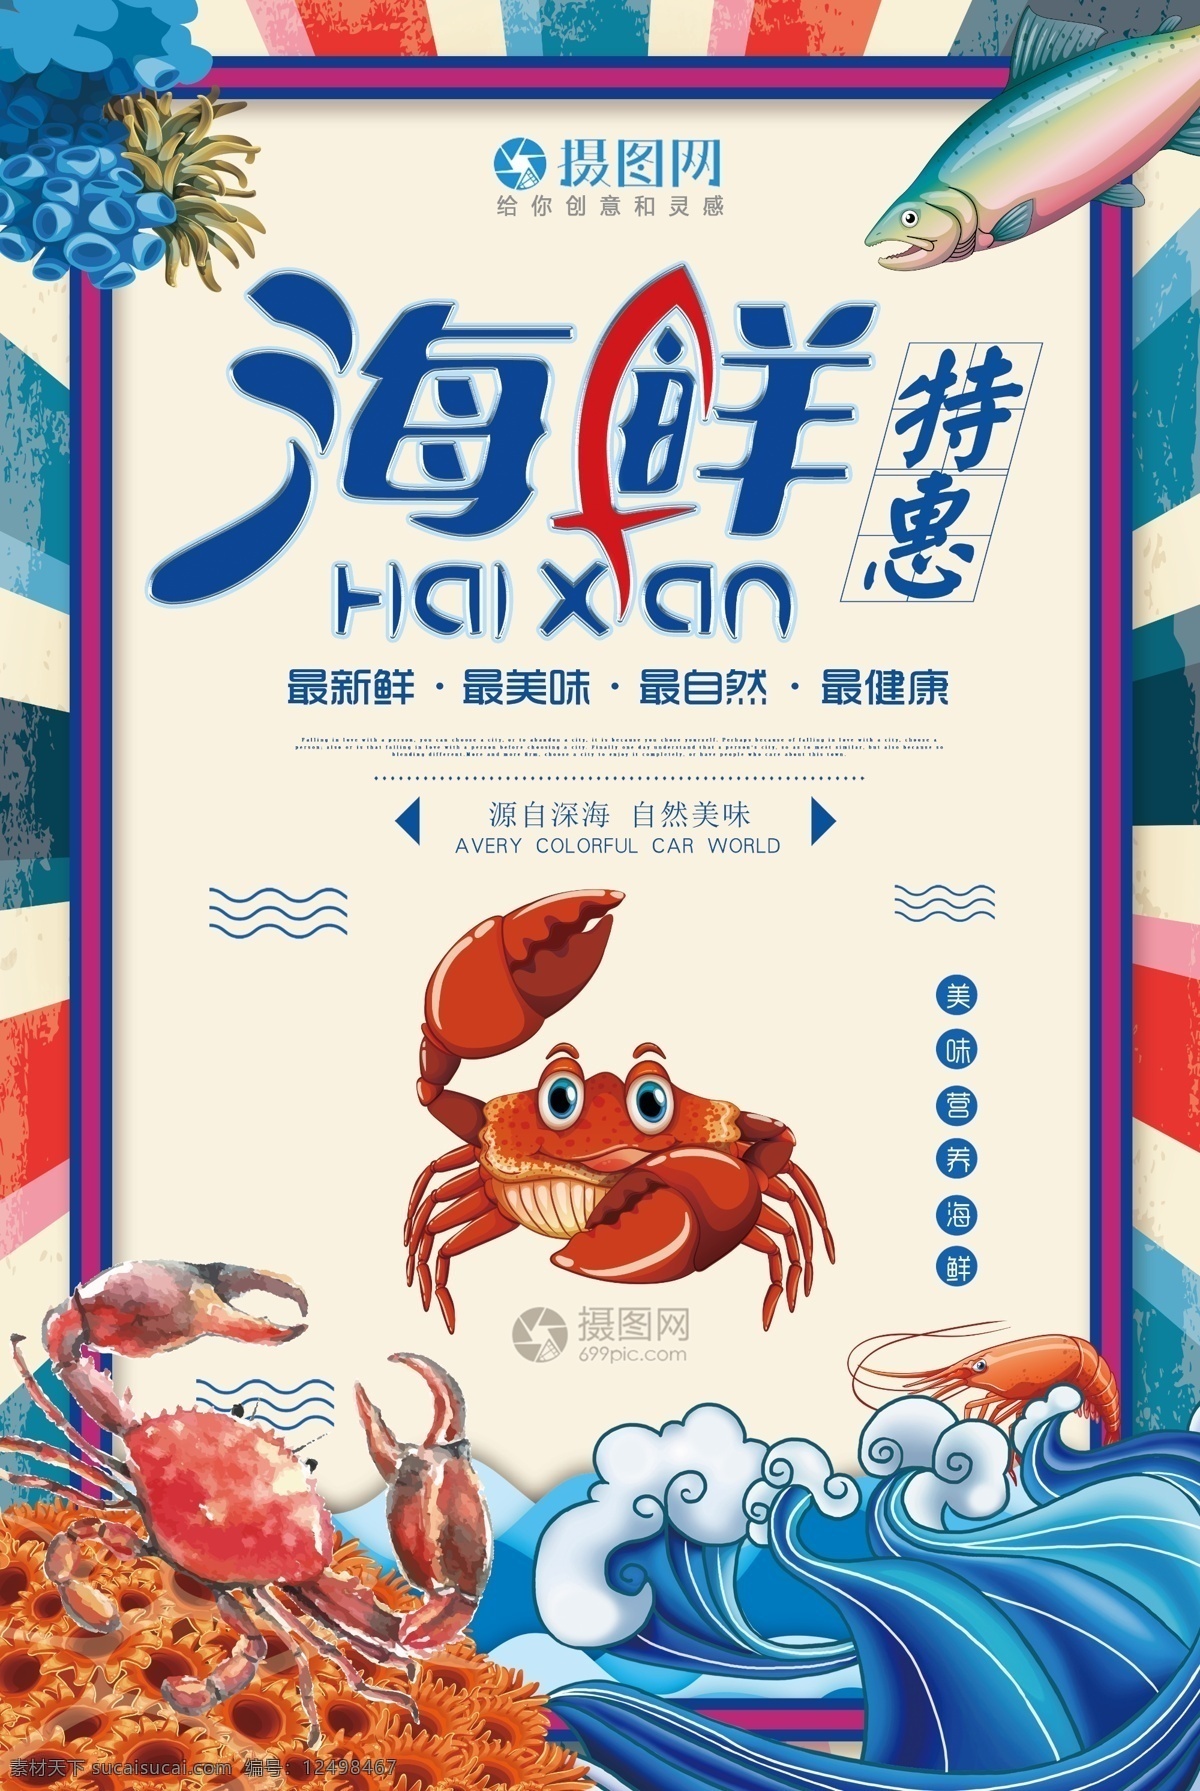 海鲜 特惠 美食 海报 促销 夏天 夏季海鲜 海鲜美食海报 海产 生猛海鲜